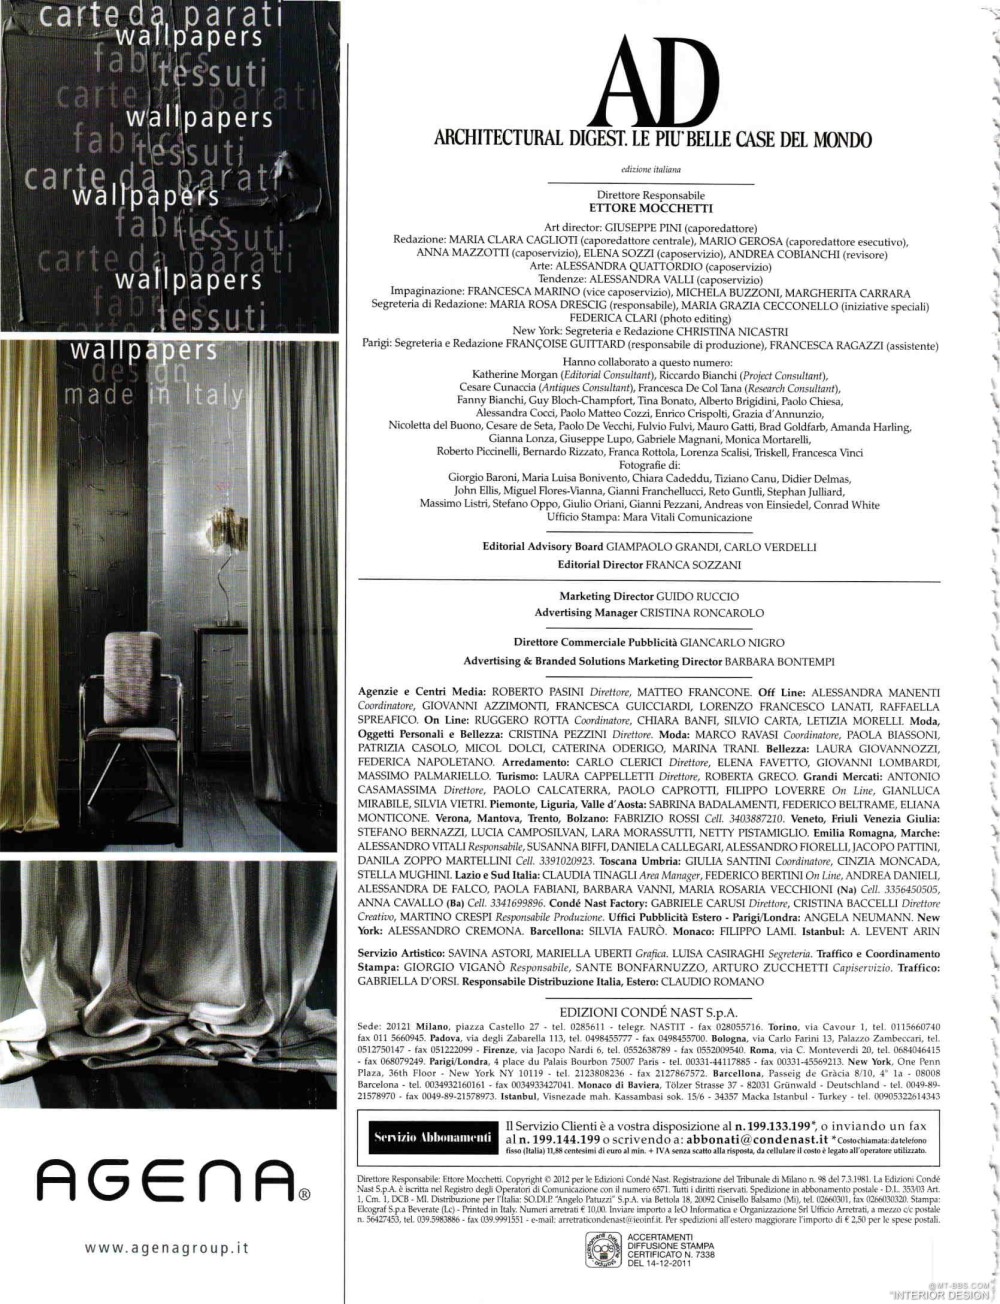 意大利AD 杂志 2012年全年JPG高清版本 全免（上传完毕）_0016.jpg